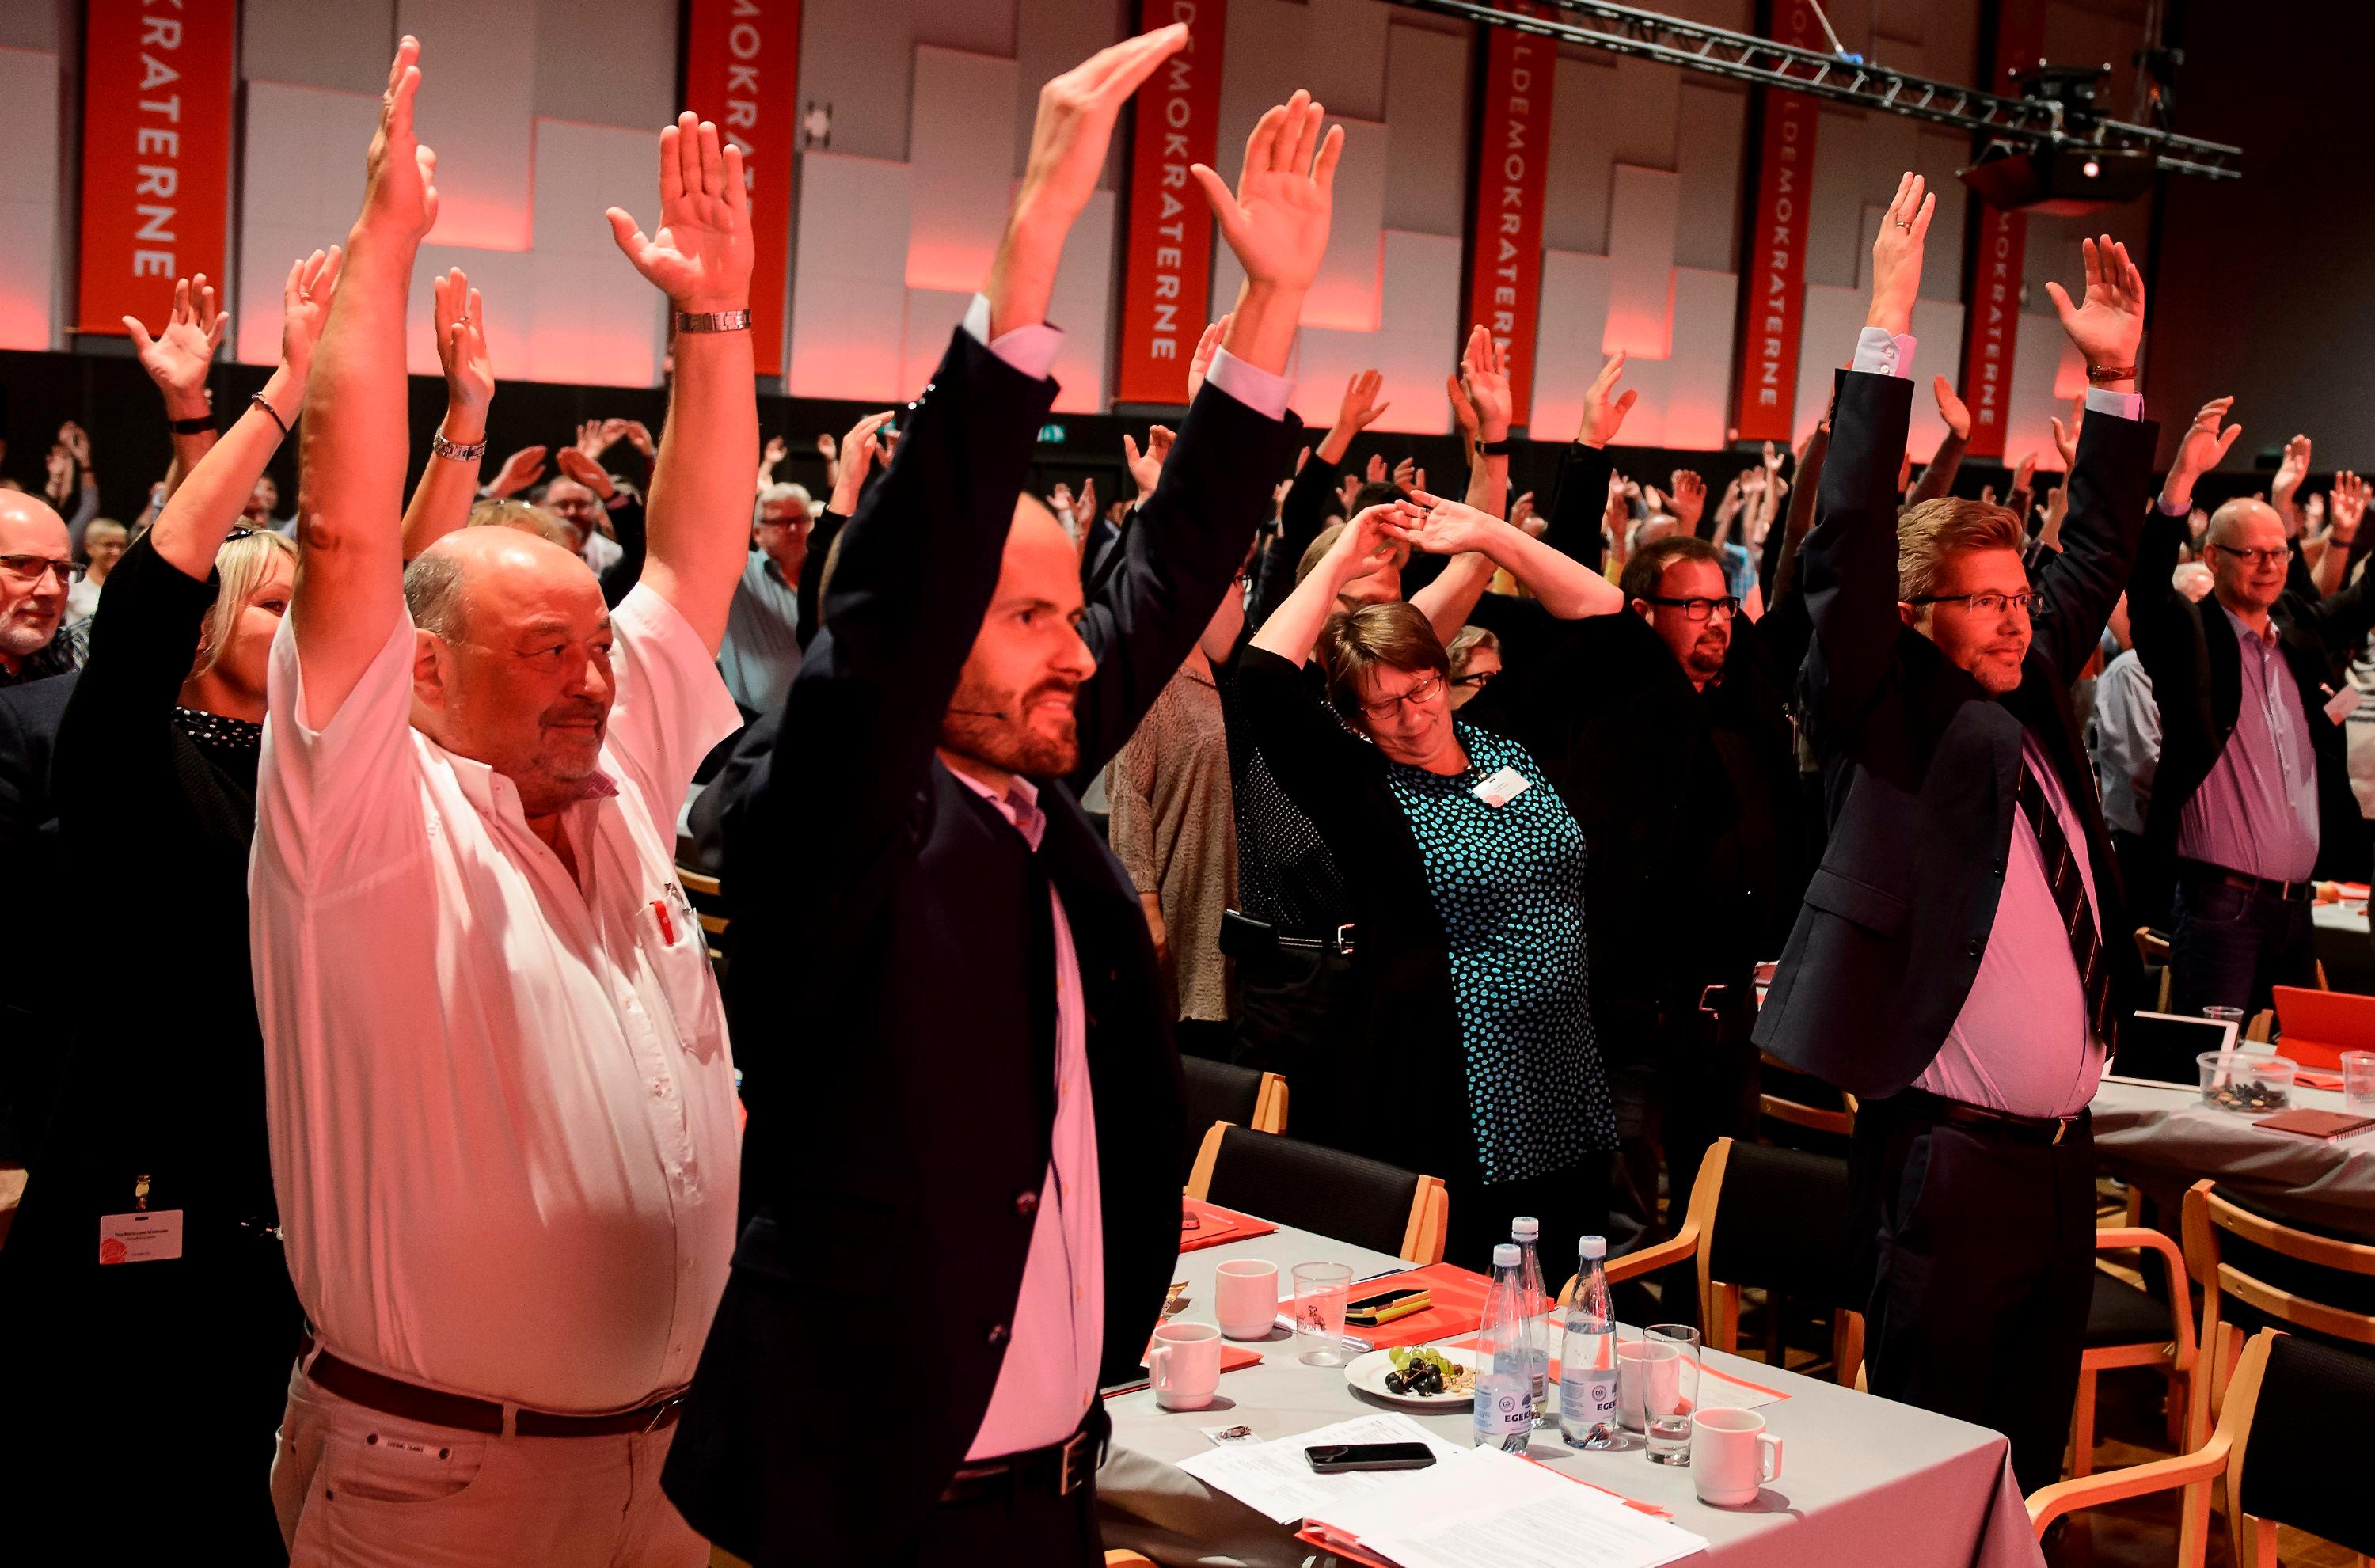 Socialdemokratiet indtager for andet år i træk førstepladsen som det mest sympatiske parti ifølge de danske vælgere, mens Venstre ligger stabilt og Dansk Folkeparti fortsat kravler opad sympati-stigen.
Foto: René Schütze / Polfoto